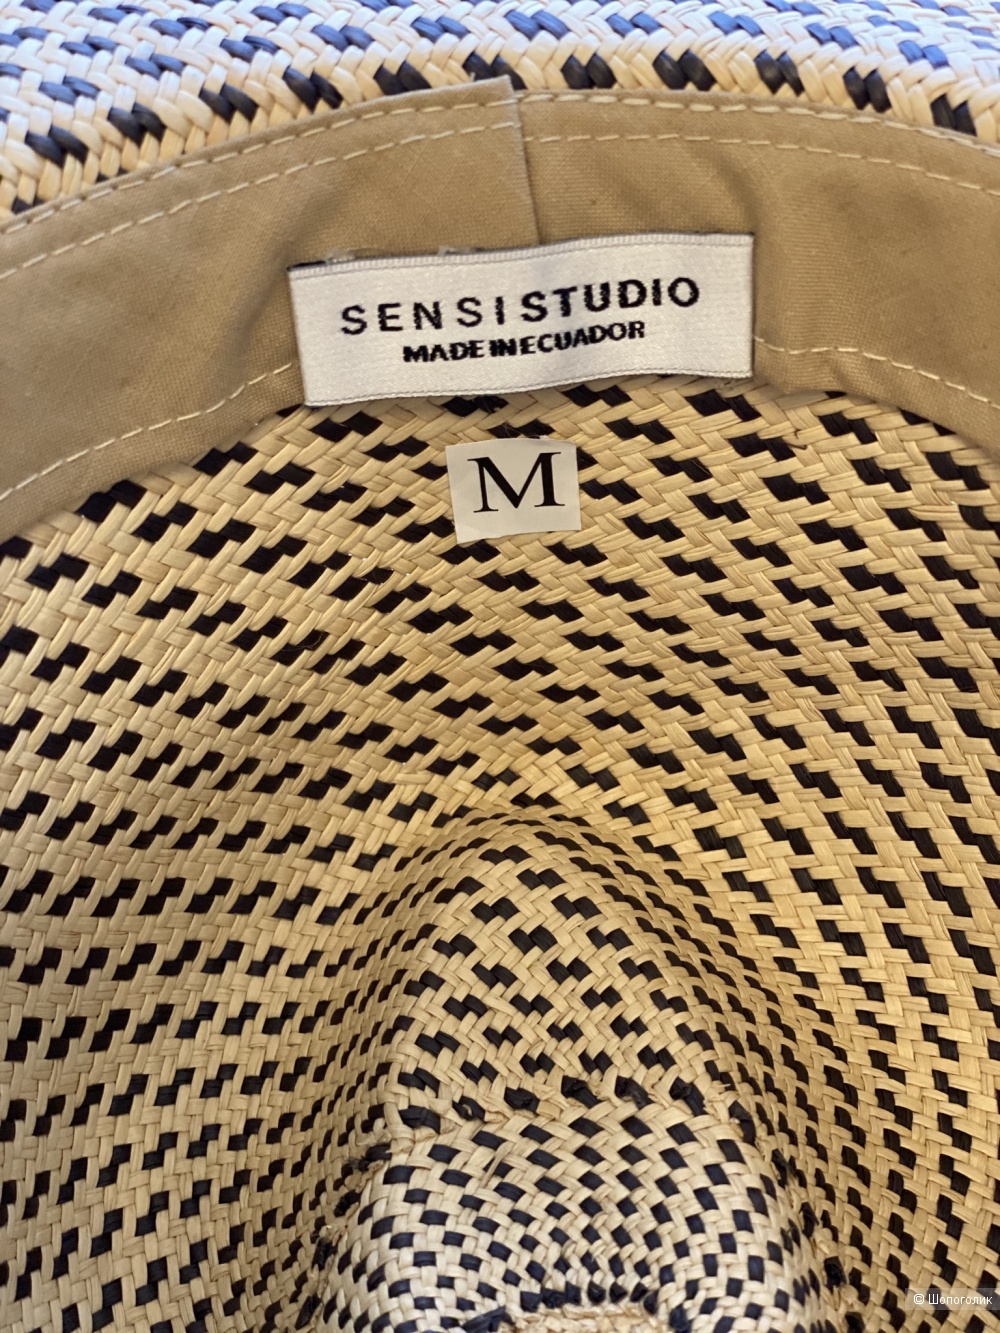 Шляпа Sensi Studio размер М.